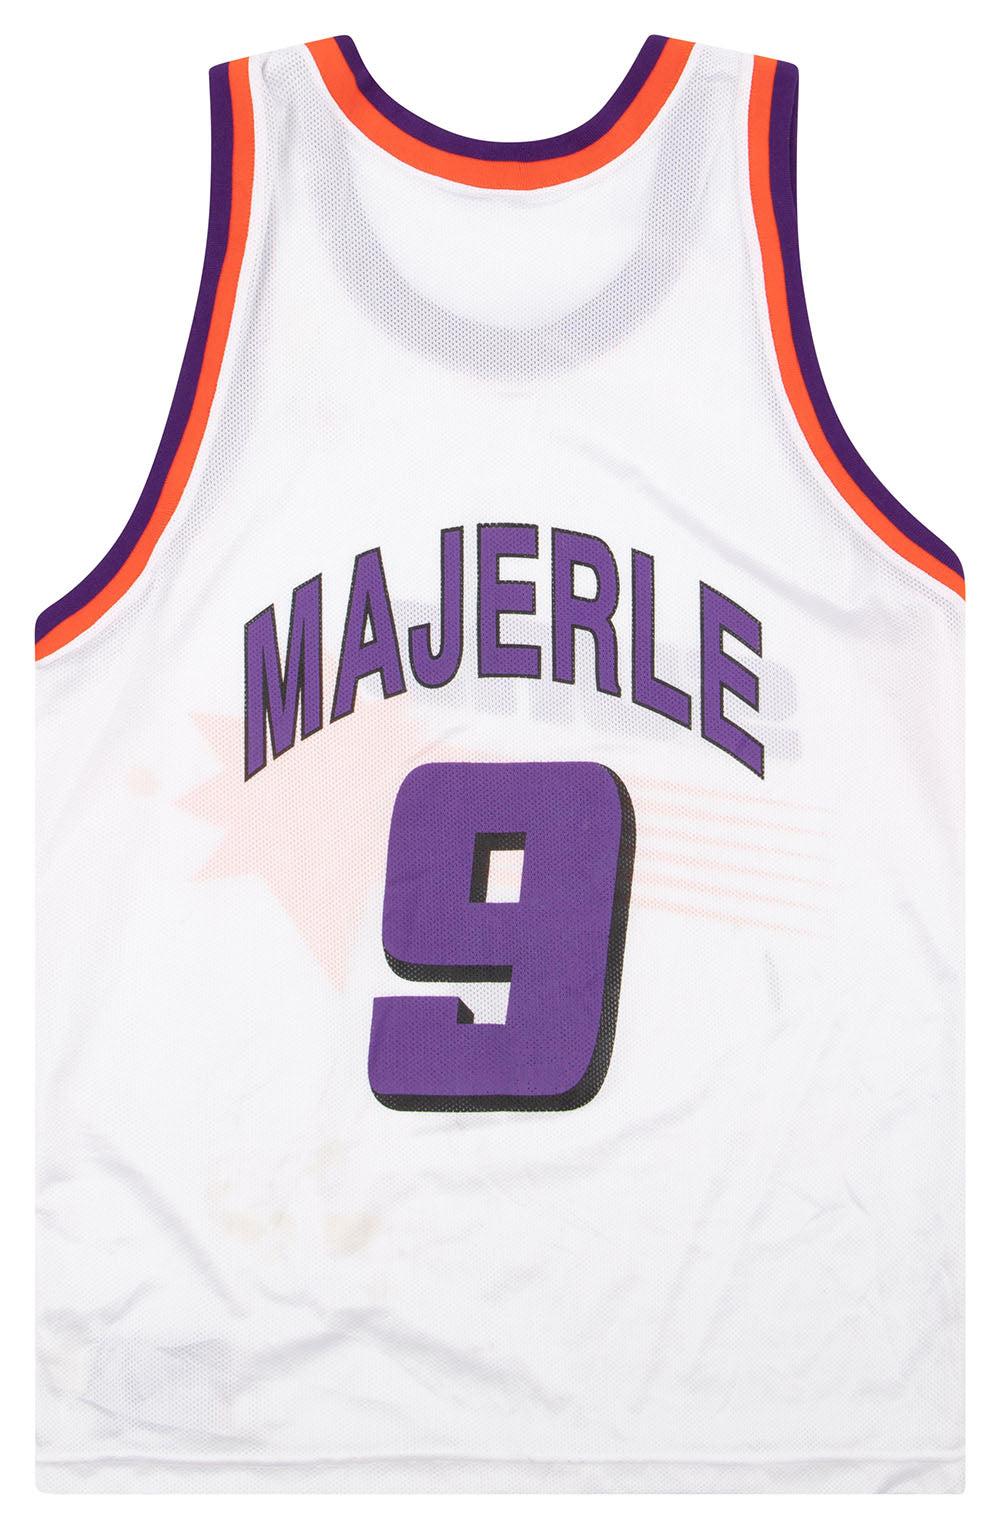 90's Dan Majerle Phoenix Suns Champion NBA Jersey Size 44 Large